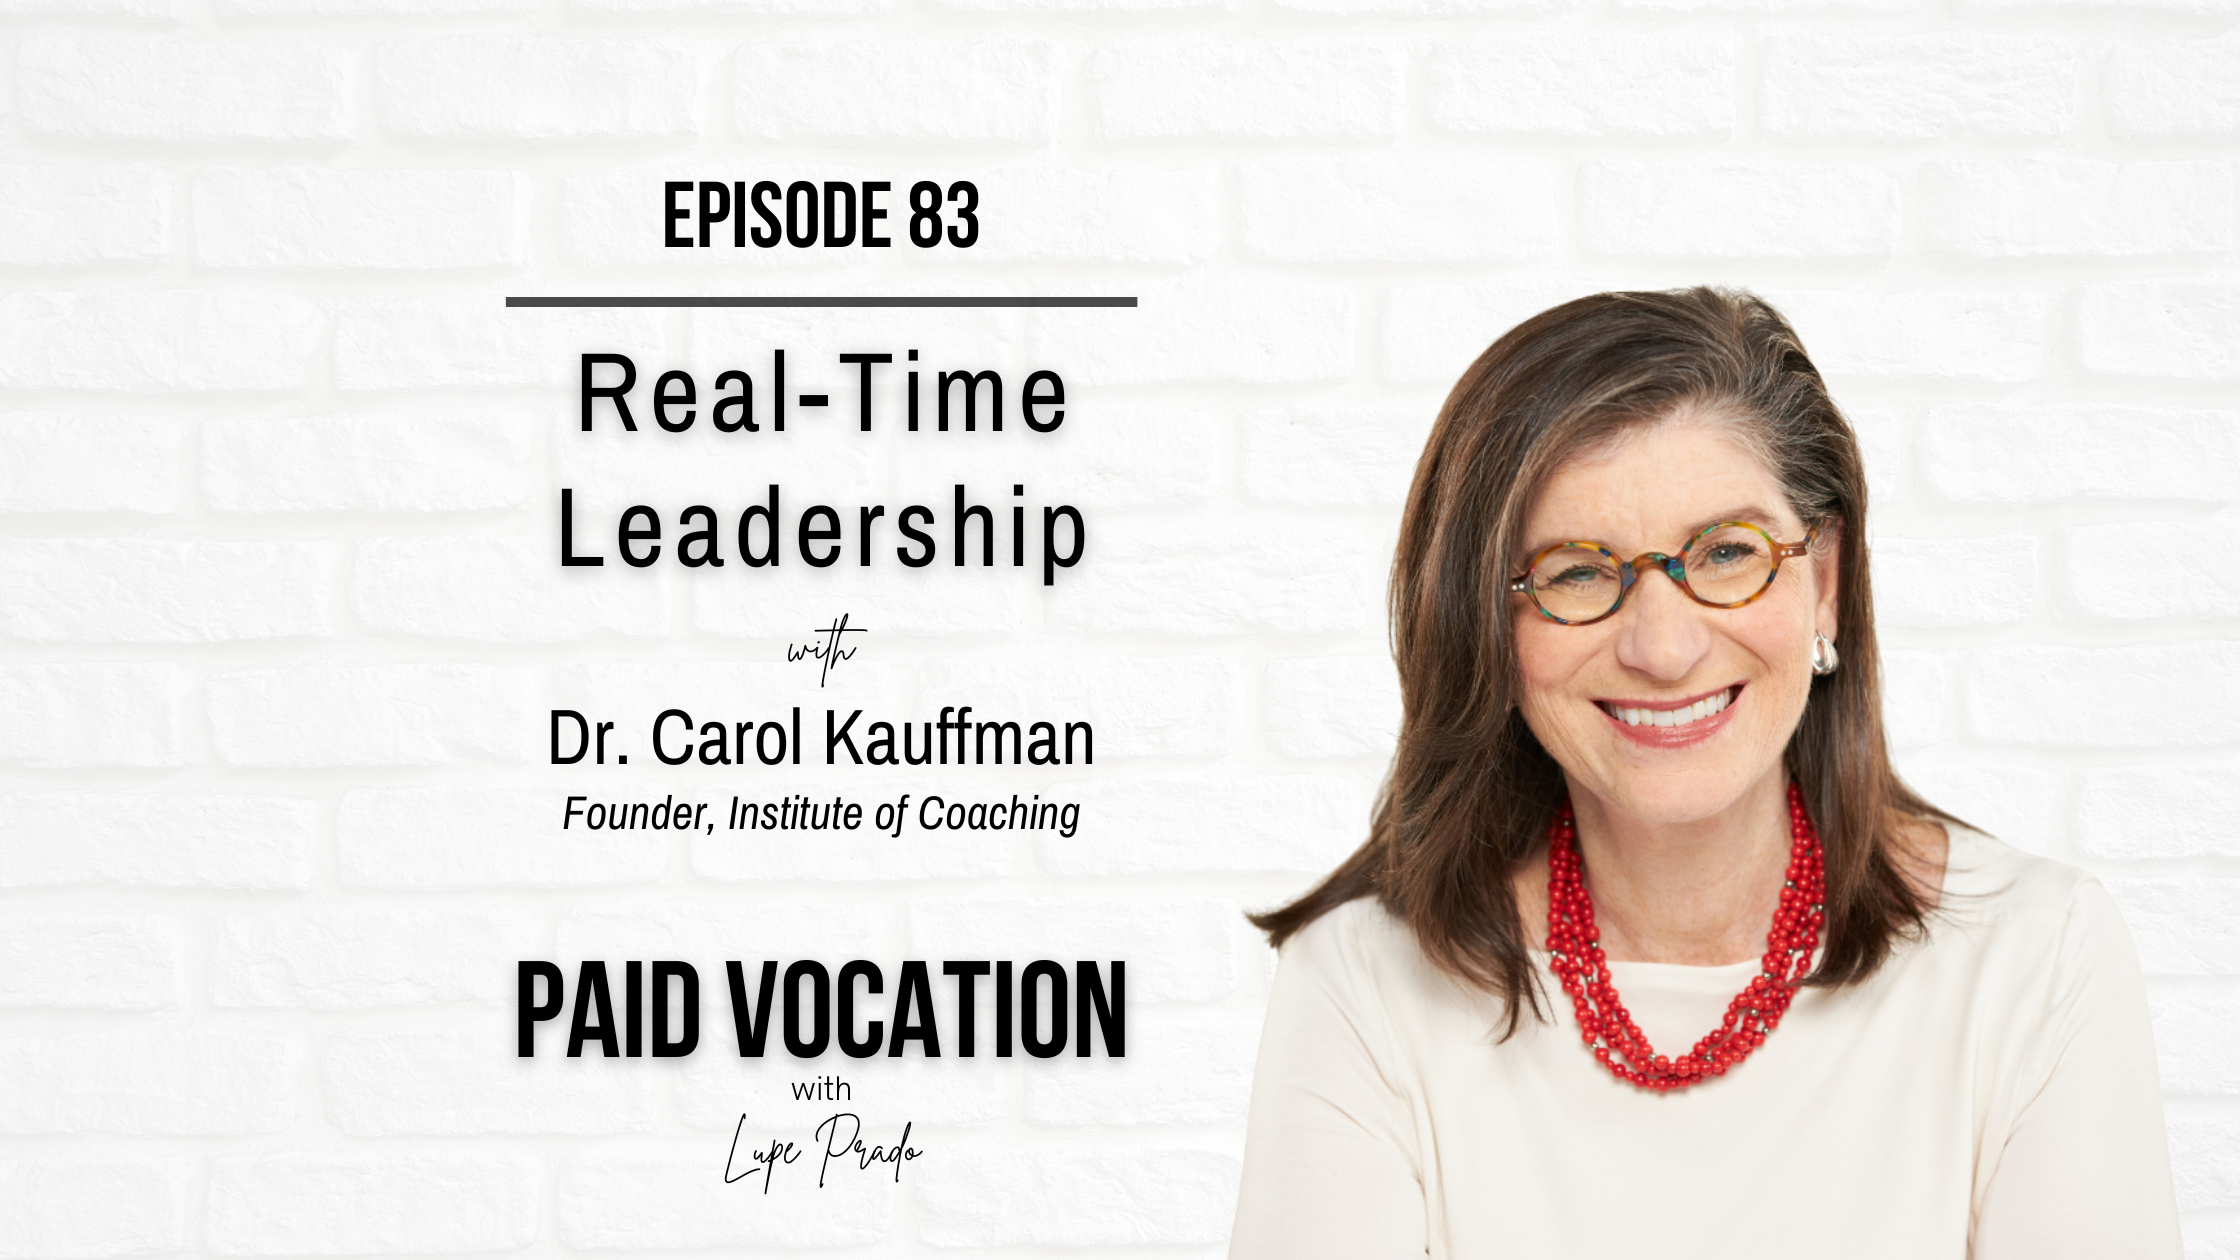 Real-Time Leadership with Dr. Carol Kauffman